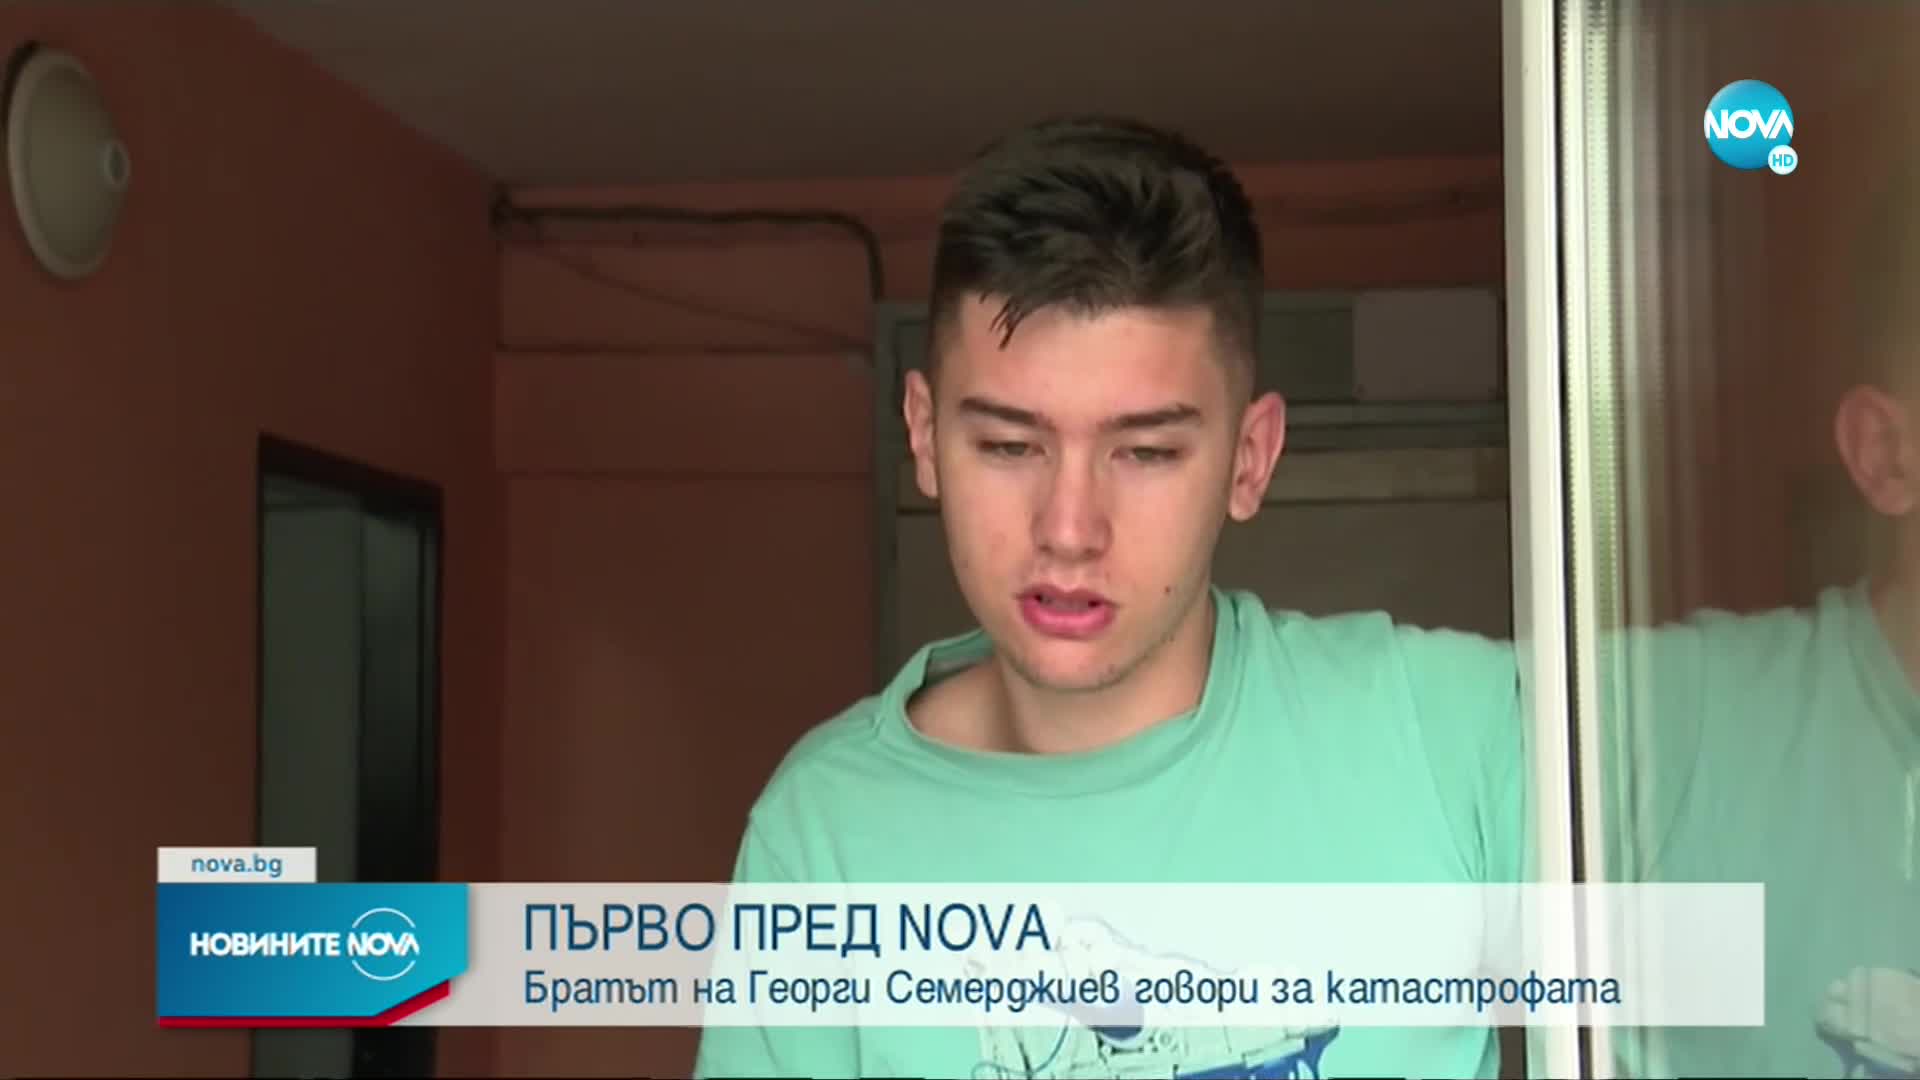 ПЪРВО ПРЕД NOVA: Братът на Георги Семерджиев говори за катастрофата